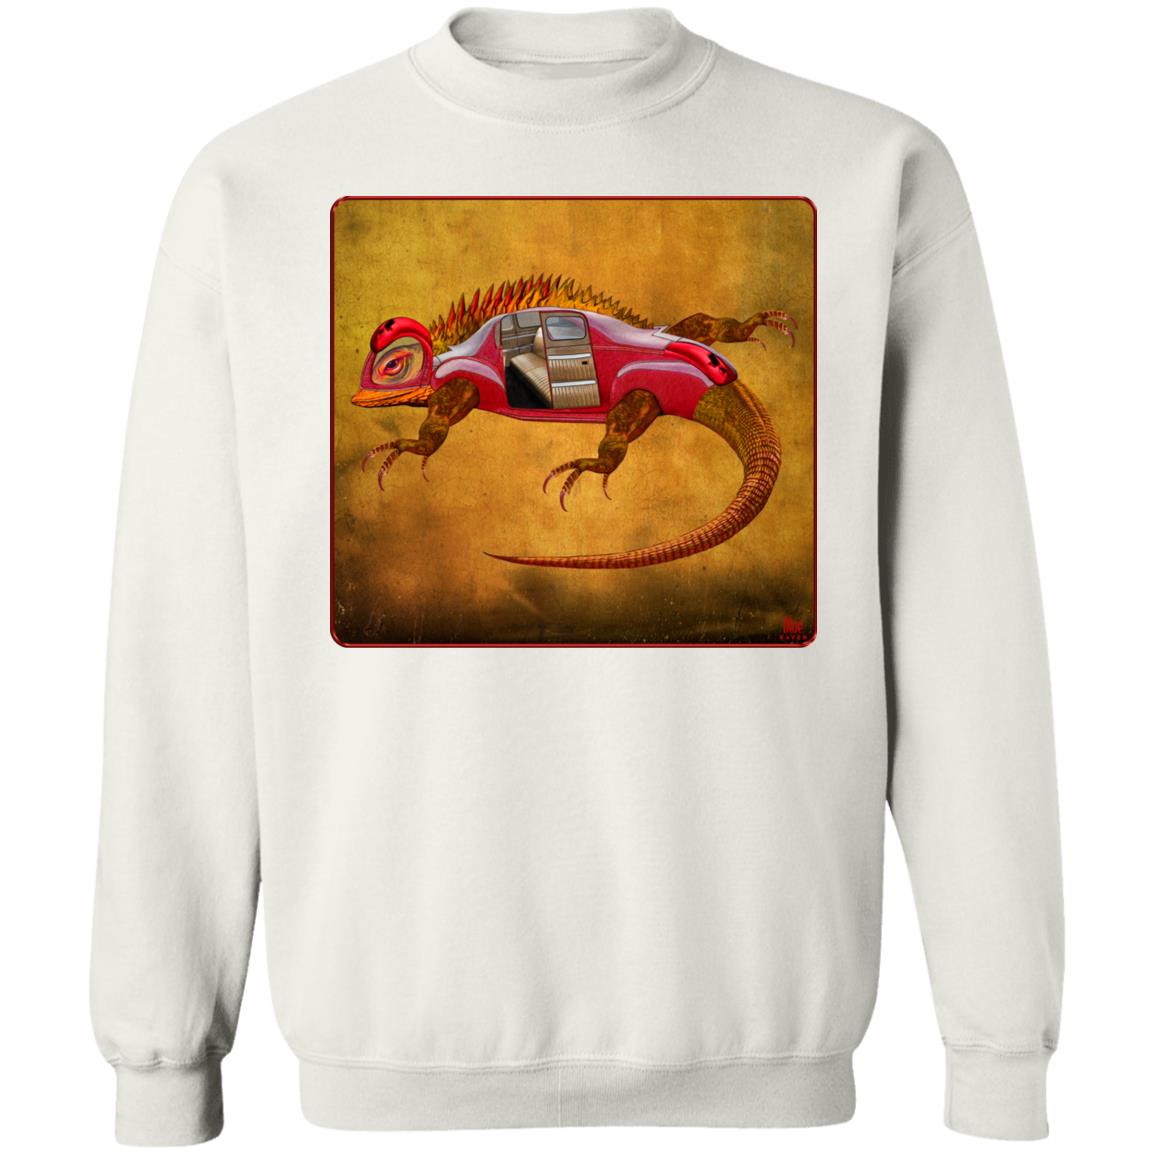 Uber Lizard - Red - Unisex Crew Neck Sweatshirt